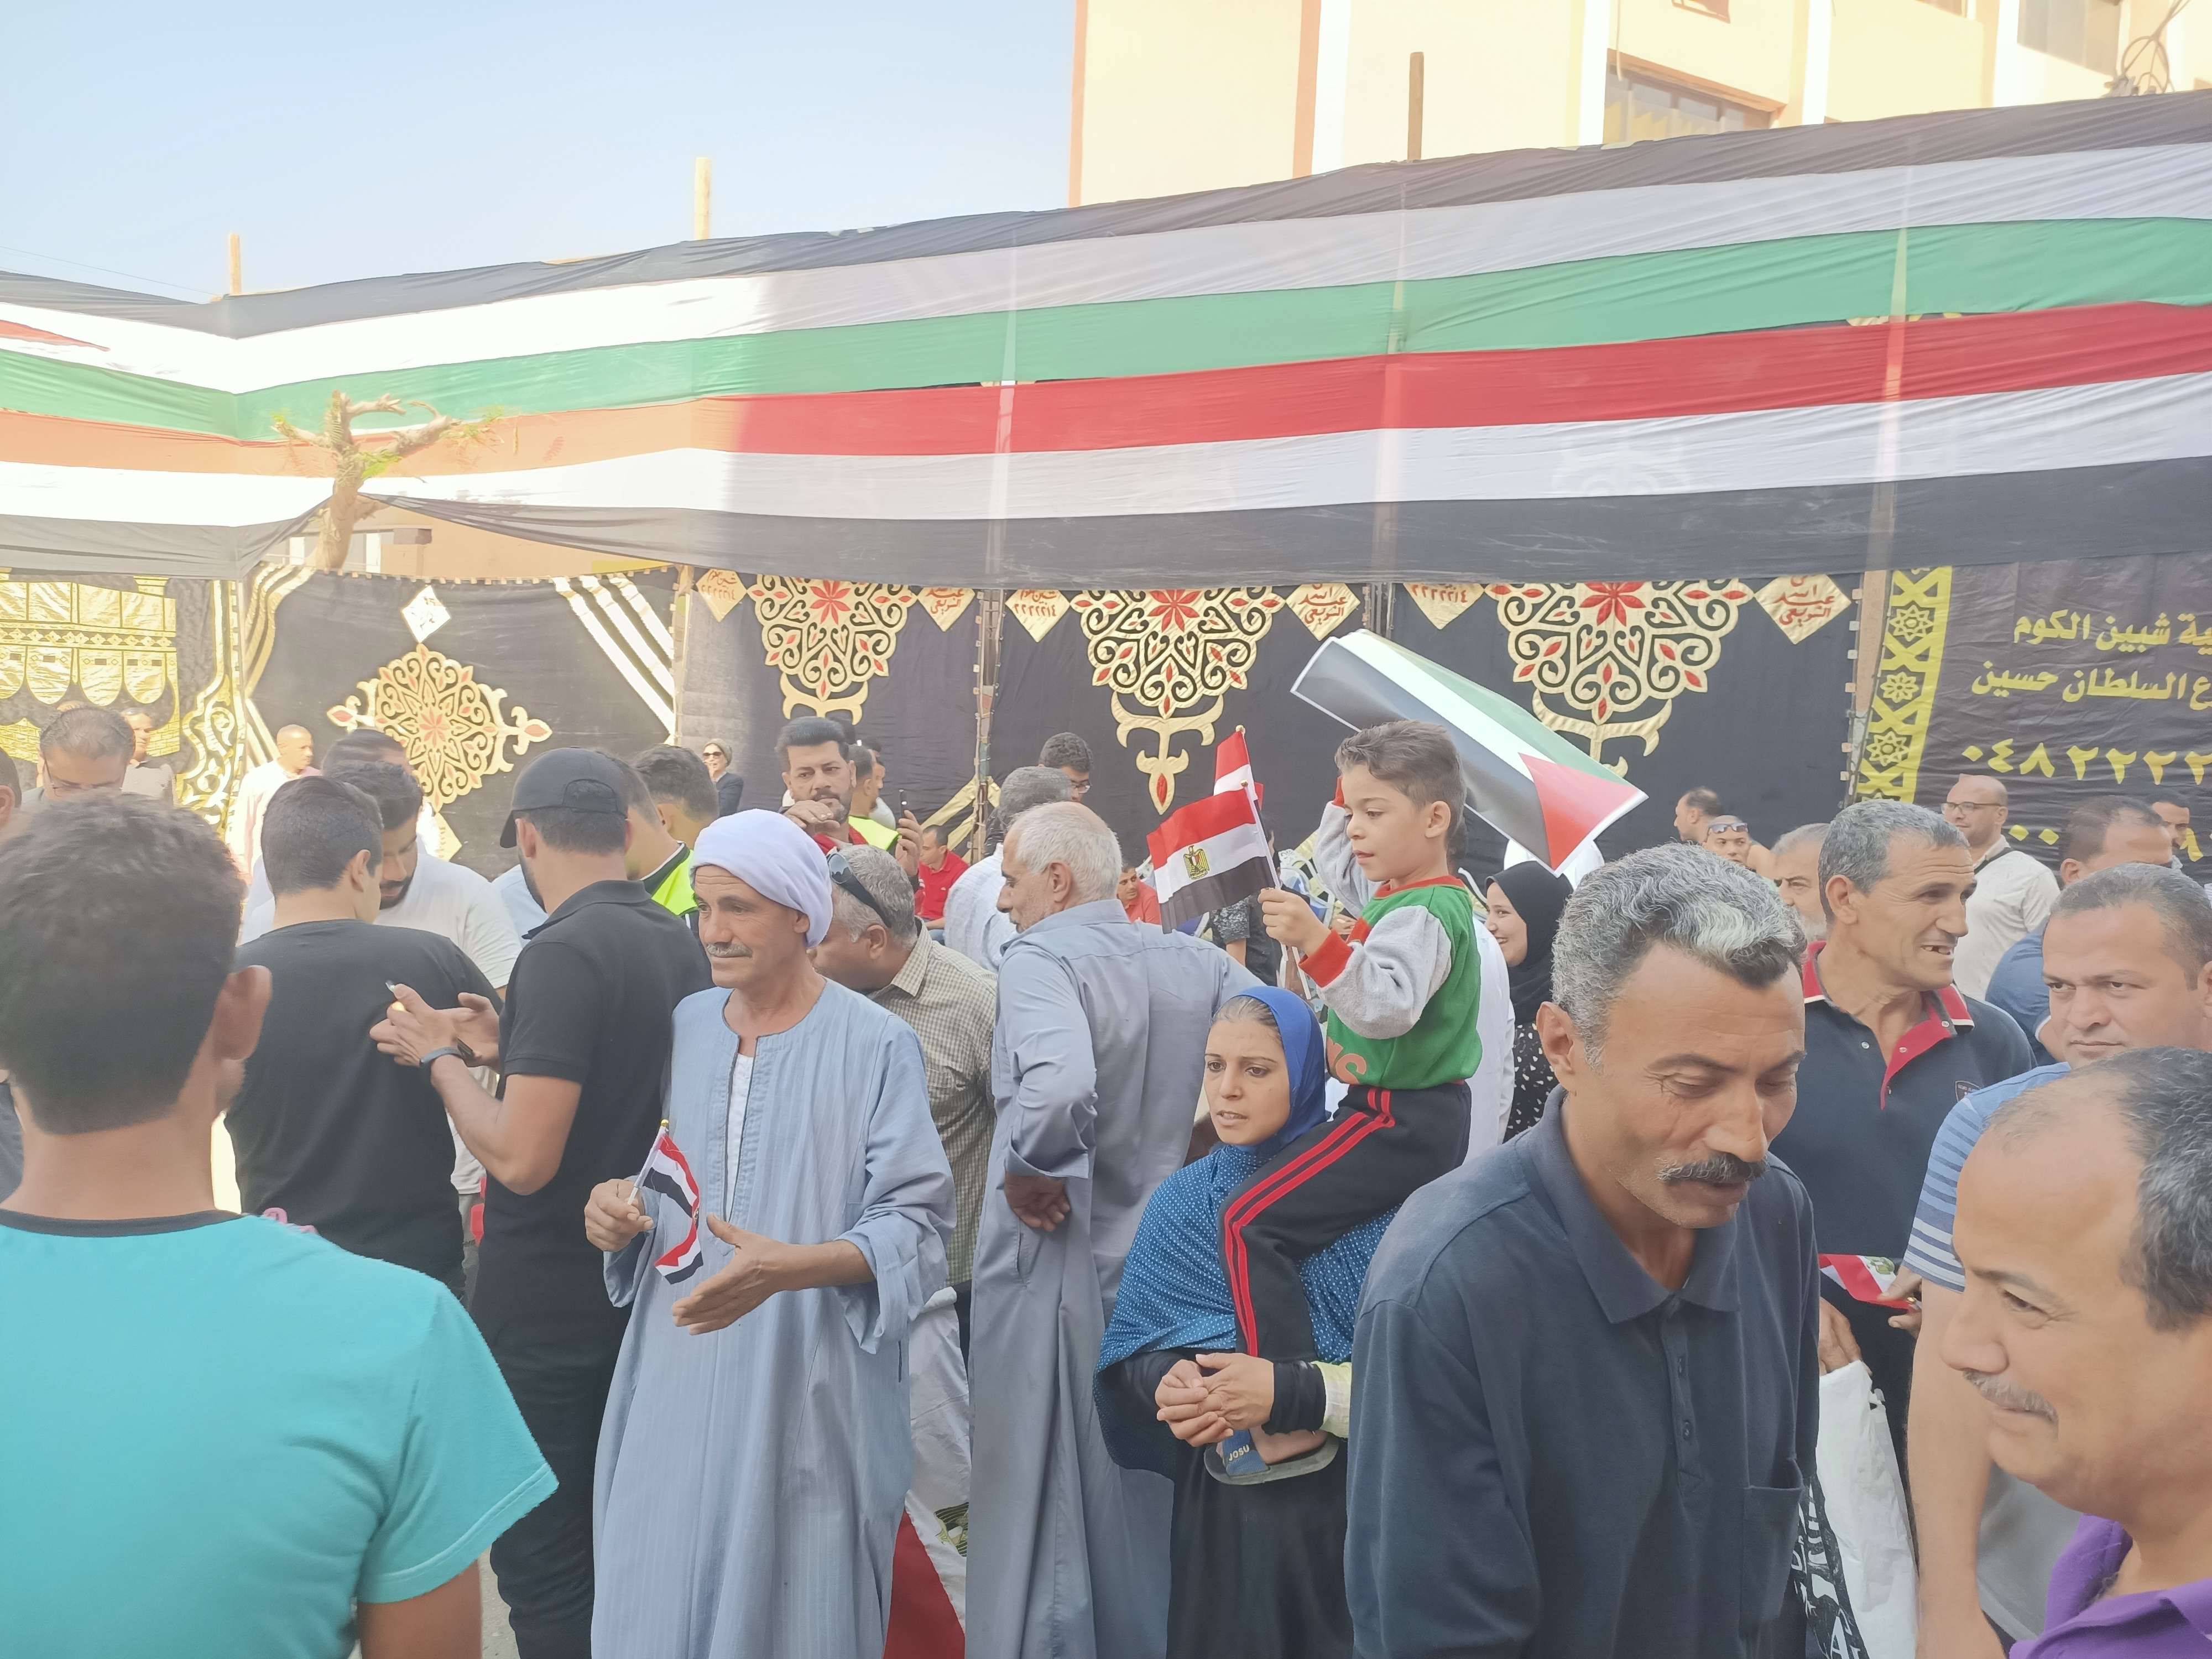 أهالى المنوفية يوزعون أعلام مصر وفلسطين على المشاركين فى الوقفة التضامنية مع الأشقاء الفلسطينيين  (4)